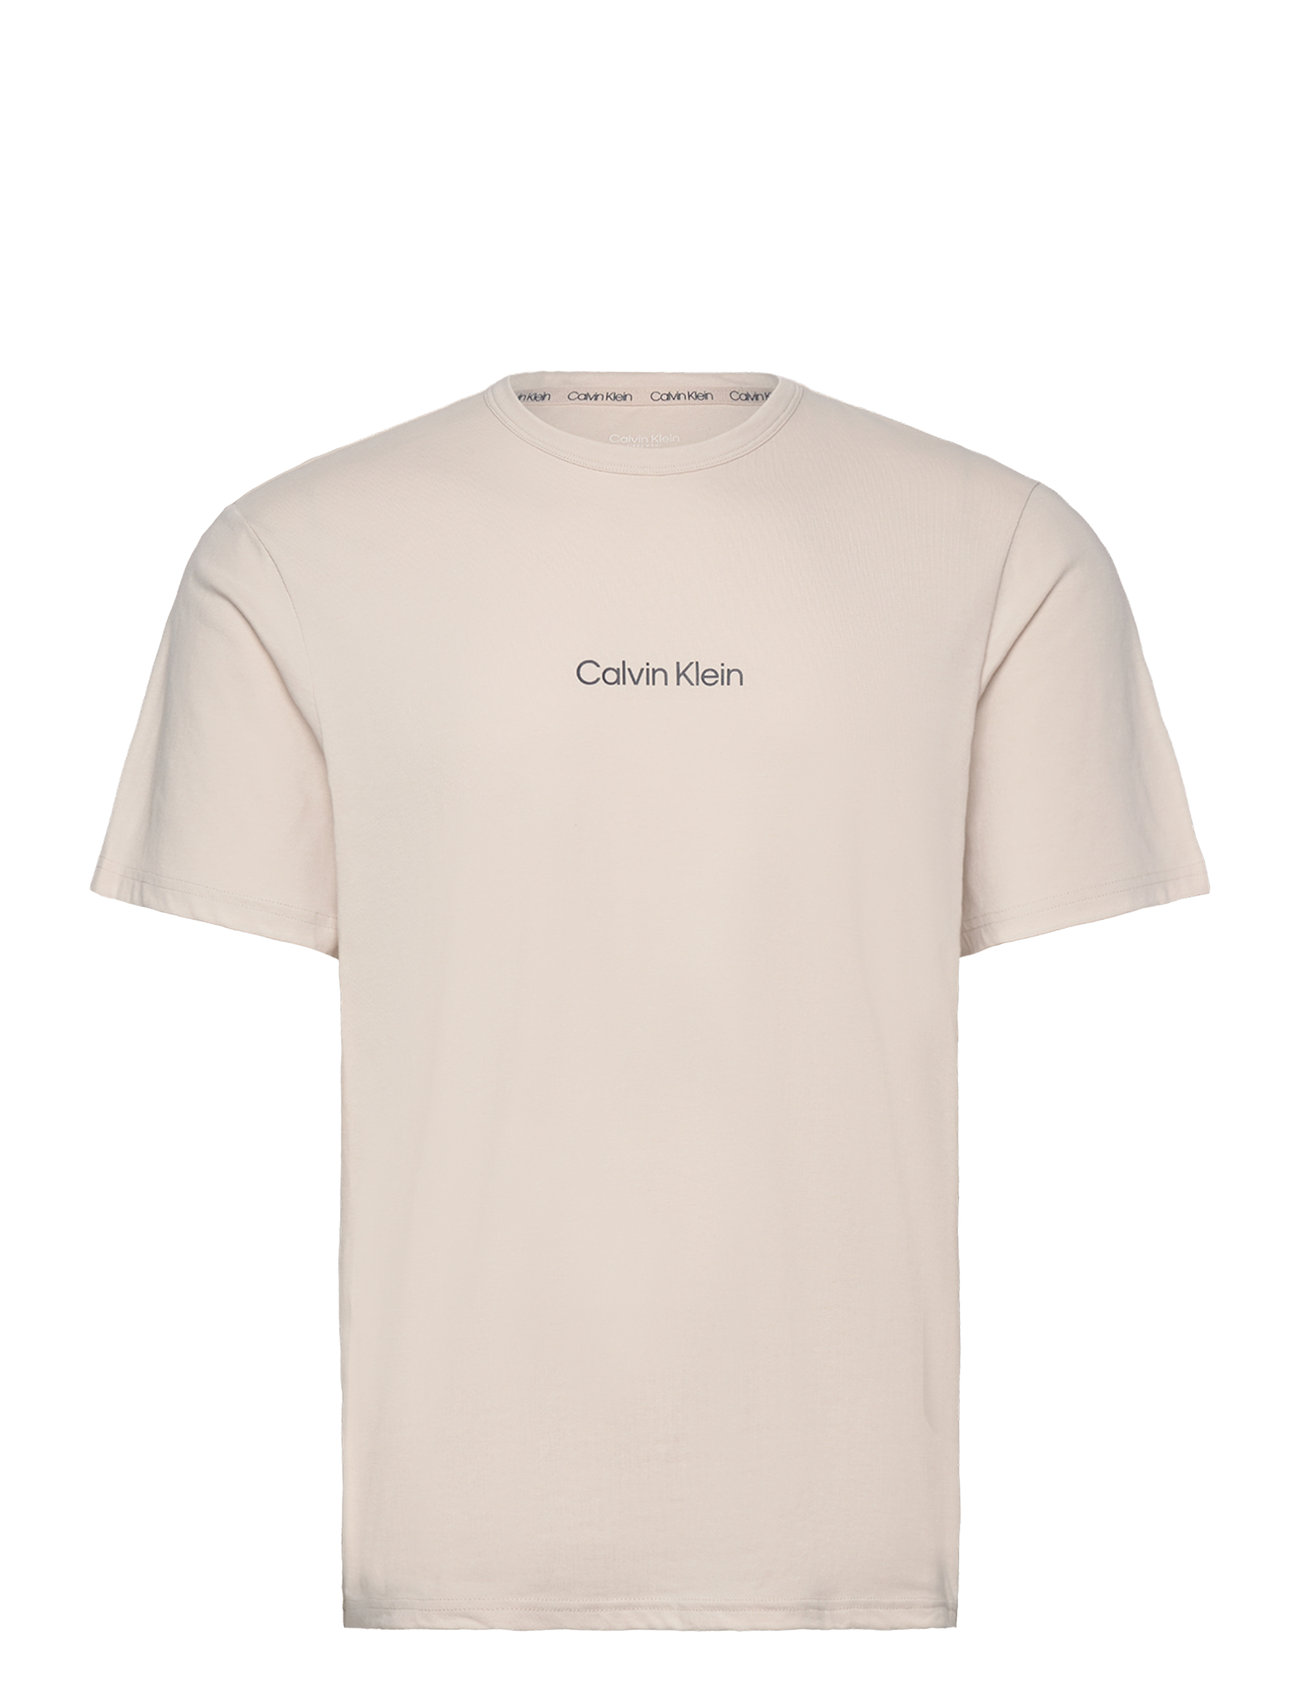 S/S Crew Neck Tops T-Kortærmet Skjorte Beige Calvin Klein